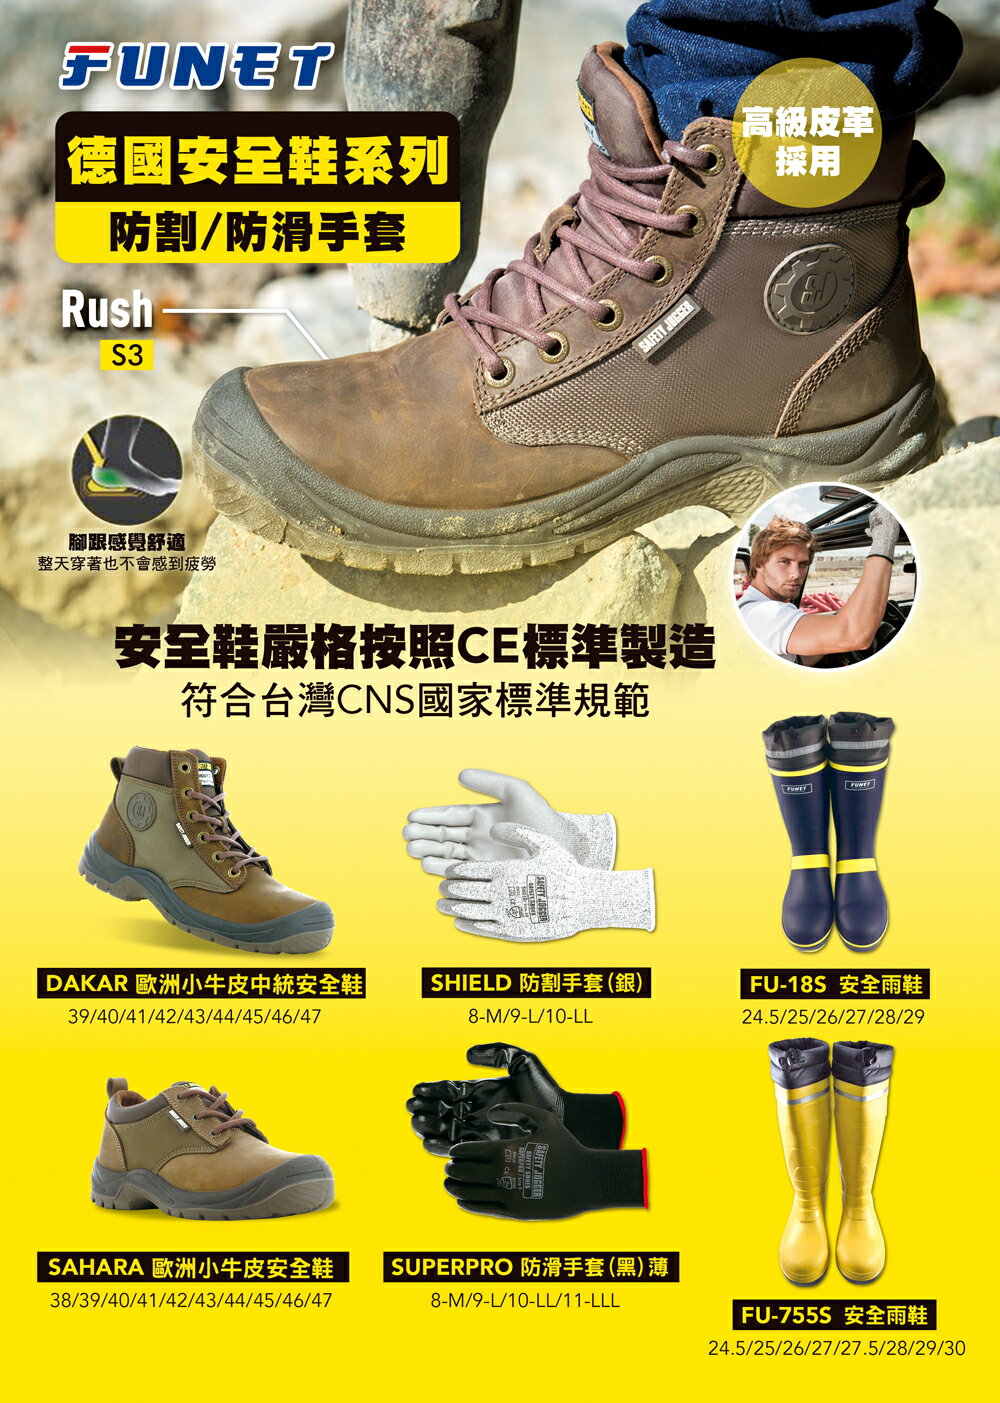 比利時 Safety Jogger SAHARA 歐洲棕色低統小牛皮工作鞋(鋼頭+防穿刺) 公司貨FUNET代理